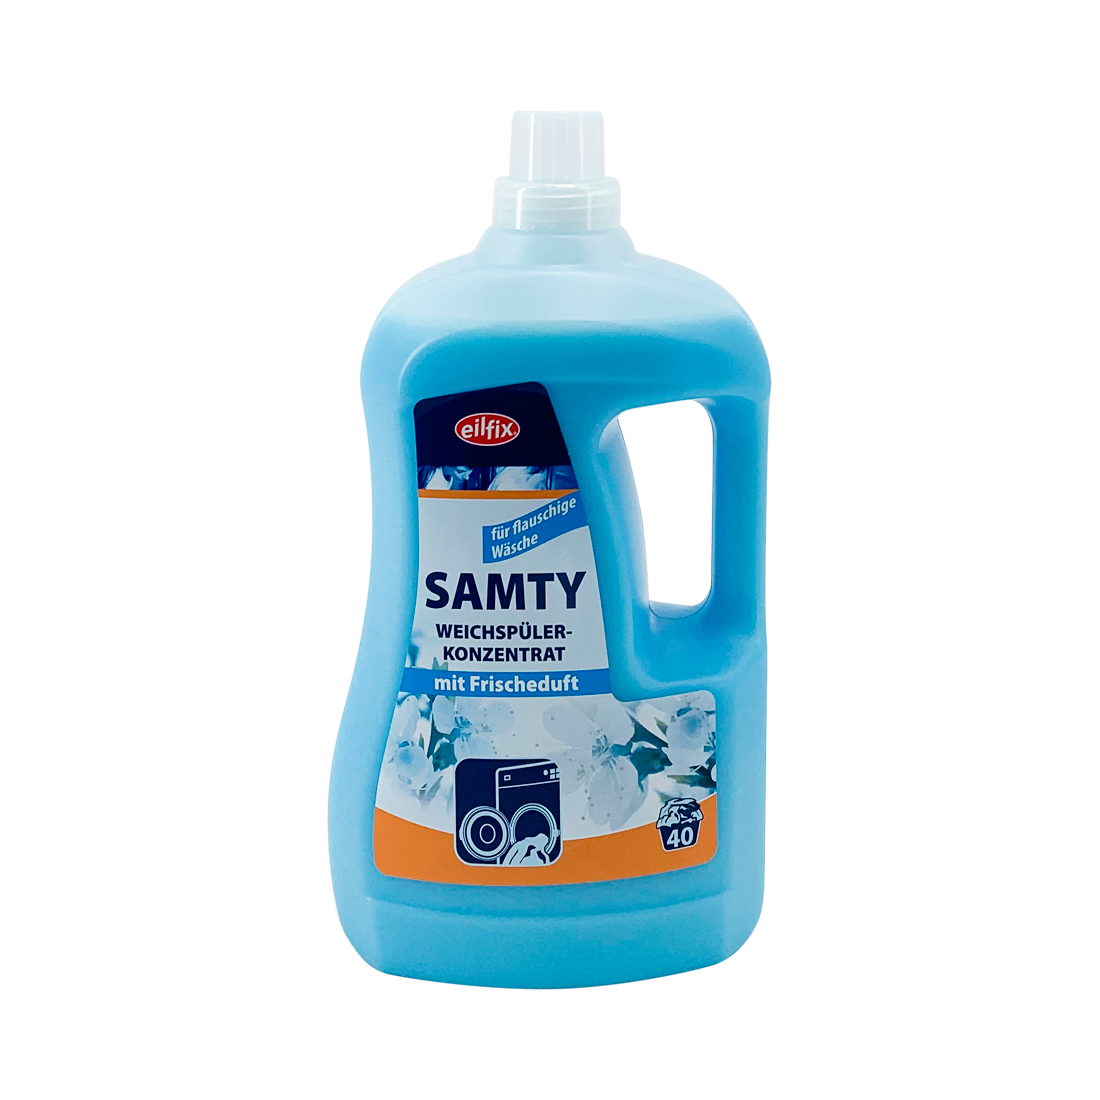 eilfix Samty Weichspüler-Konzentrat, für Wolle und Feines, 2 Liter Henkelflasche, blau, 2 Liter